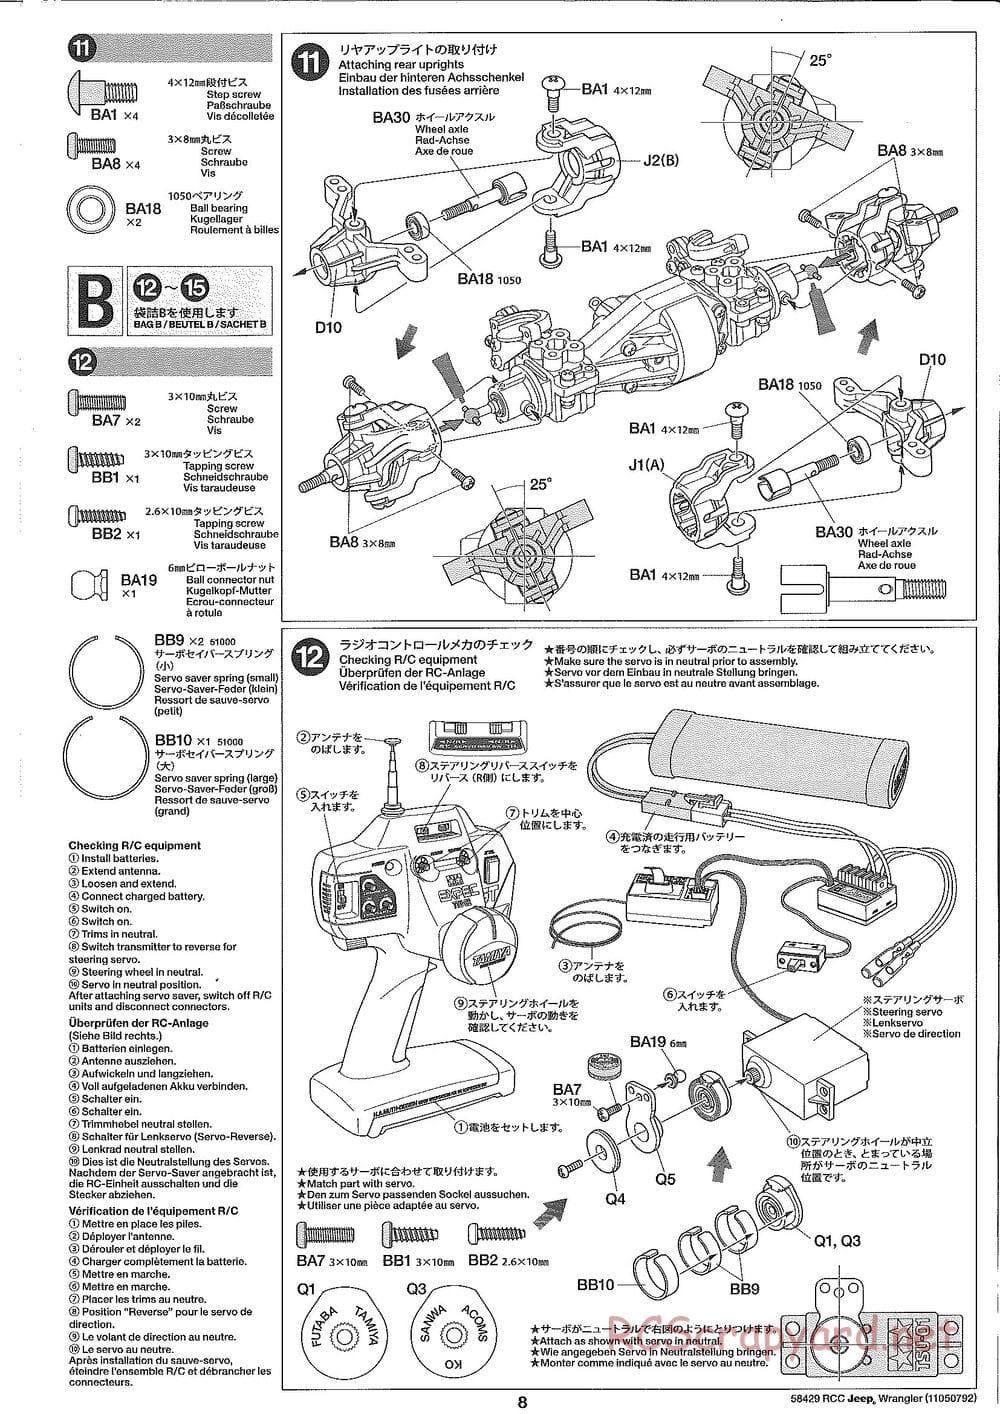 Tamiya - Jeep Wrangler - CR-01 Chassis - Manual - Page 8